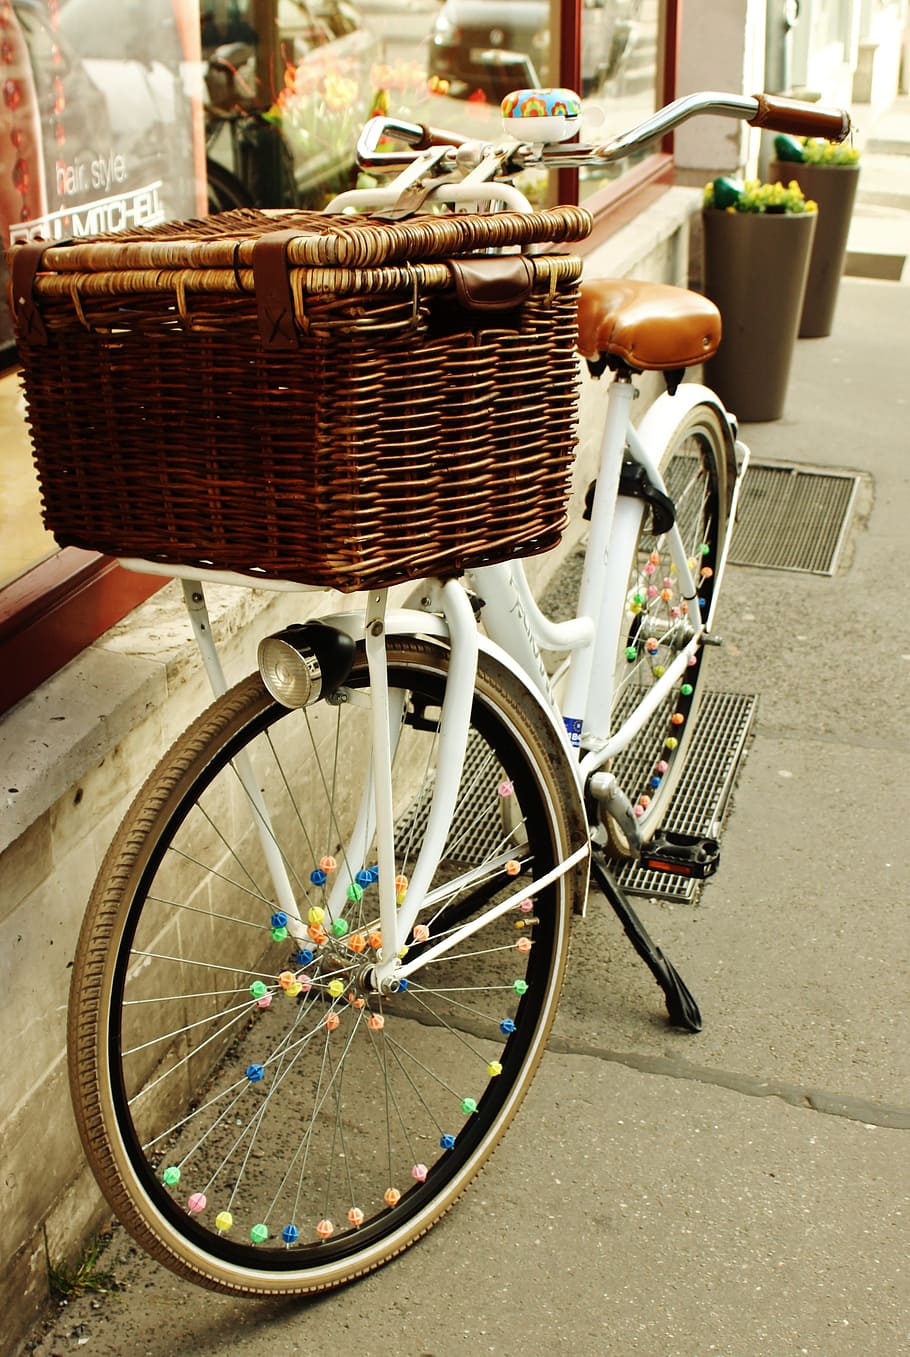 Sepeda, Kota, Siklus, Musim semi, waktu luang, keranjang, bersepeda, roda, aktivitas, gaya hidup